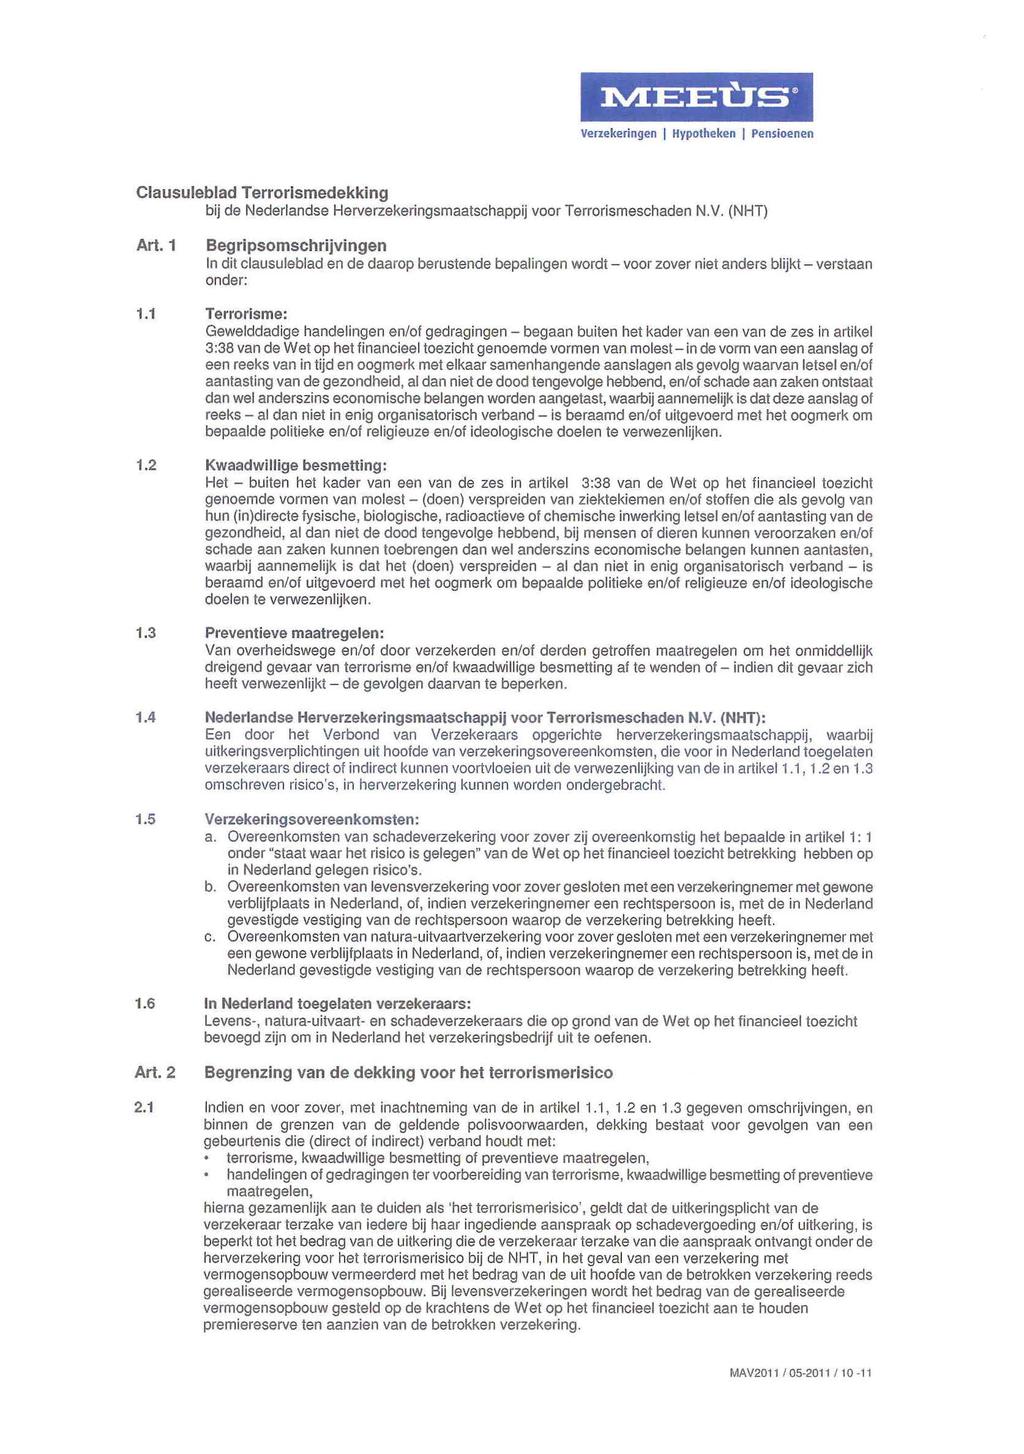 Clausuleblad Terrorismedekking bij de Nederlandse Herverzekeringsmaatschappij voor Terrorismeschaden N.V. (NHT) Art. 1 1.1 1.2 1.3 1.4 1.5 1.6 Art. 2 2.